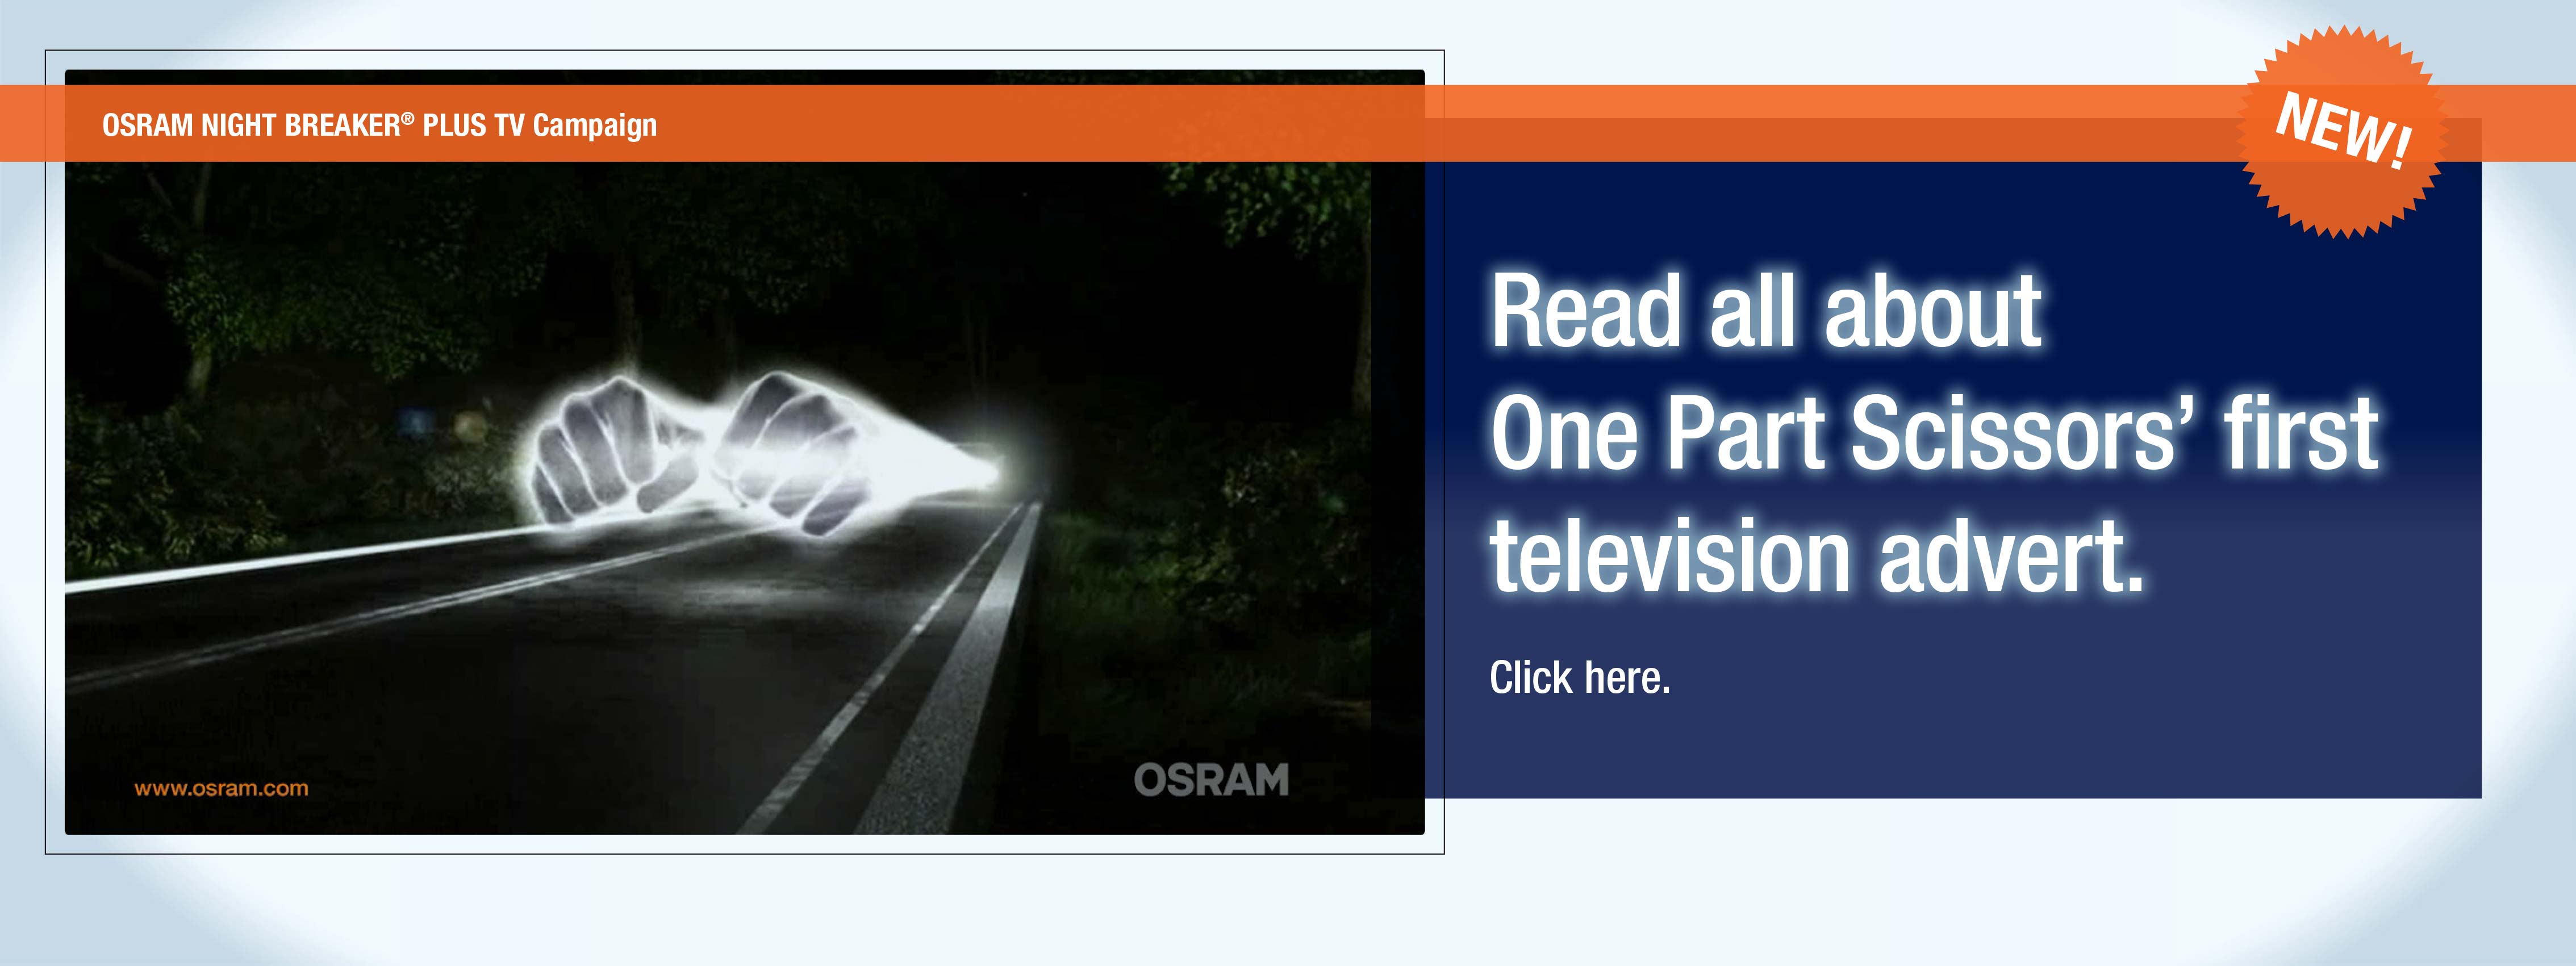 OSRAM Night Breaker Plus TV Commercial 